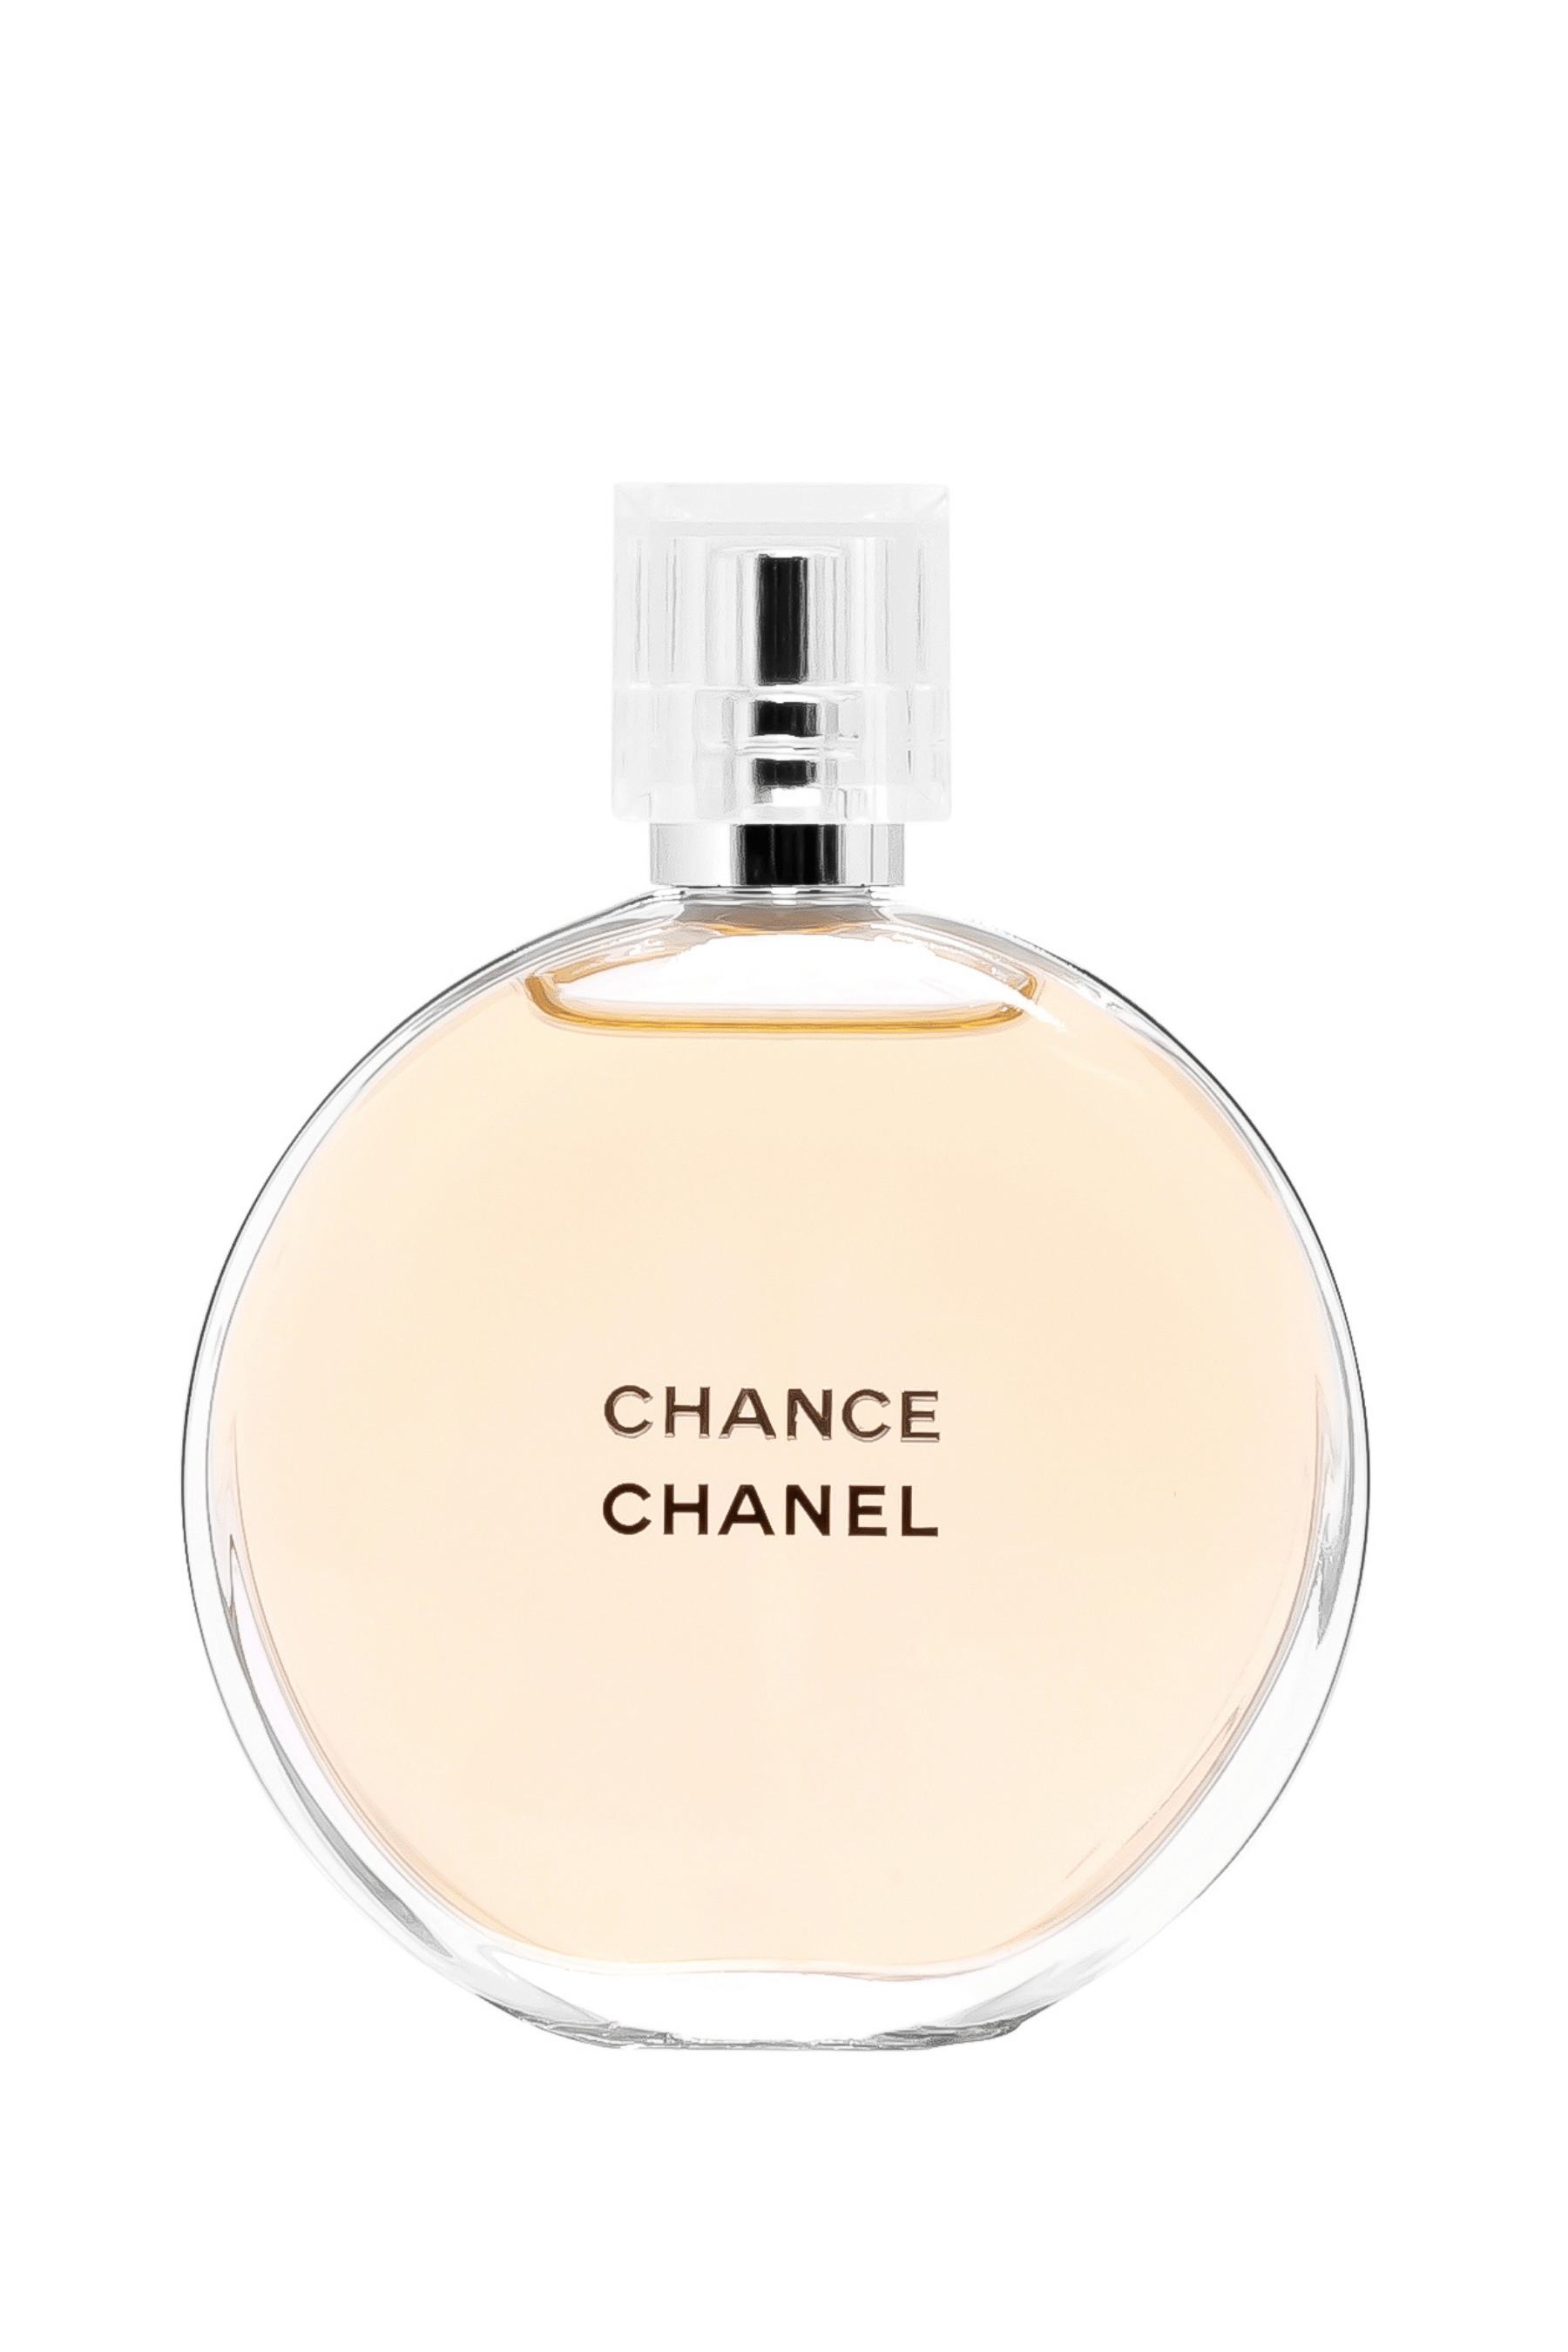 Chanel Chance Perfume by Chanel for Women, Eau de Toilette 100ml